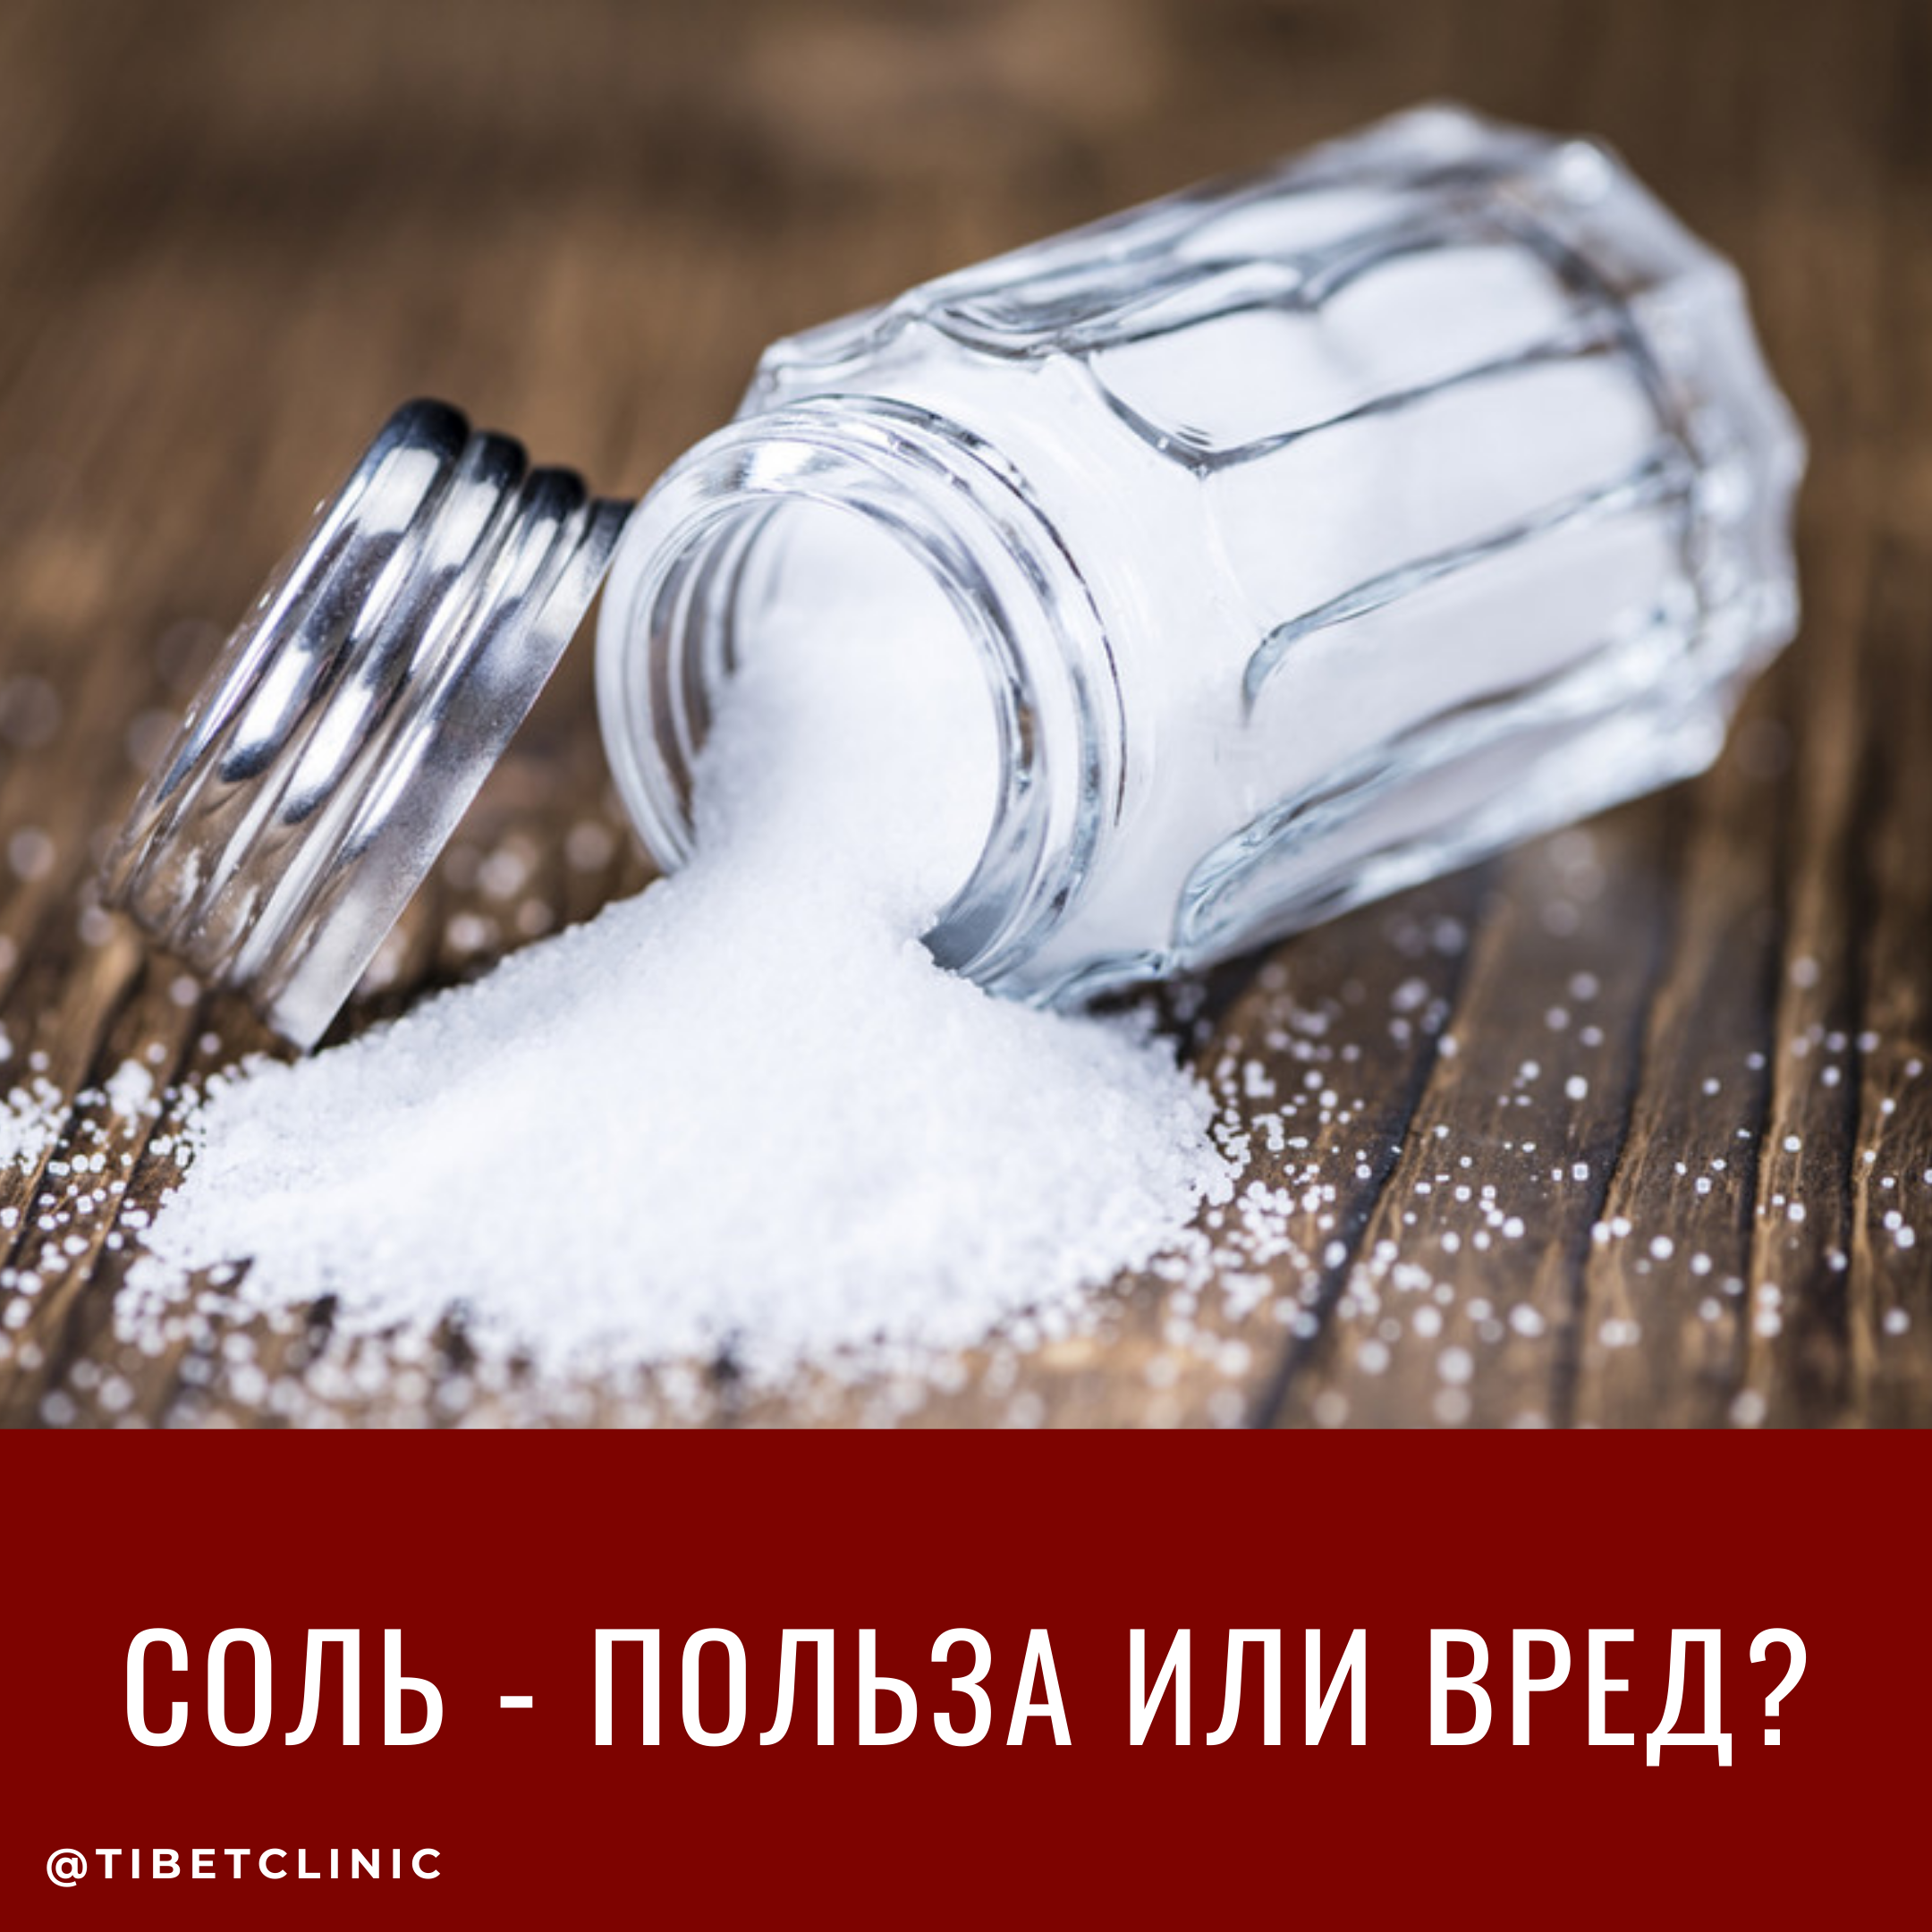 Соль - польза или вред?